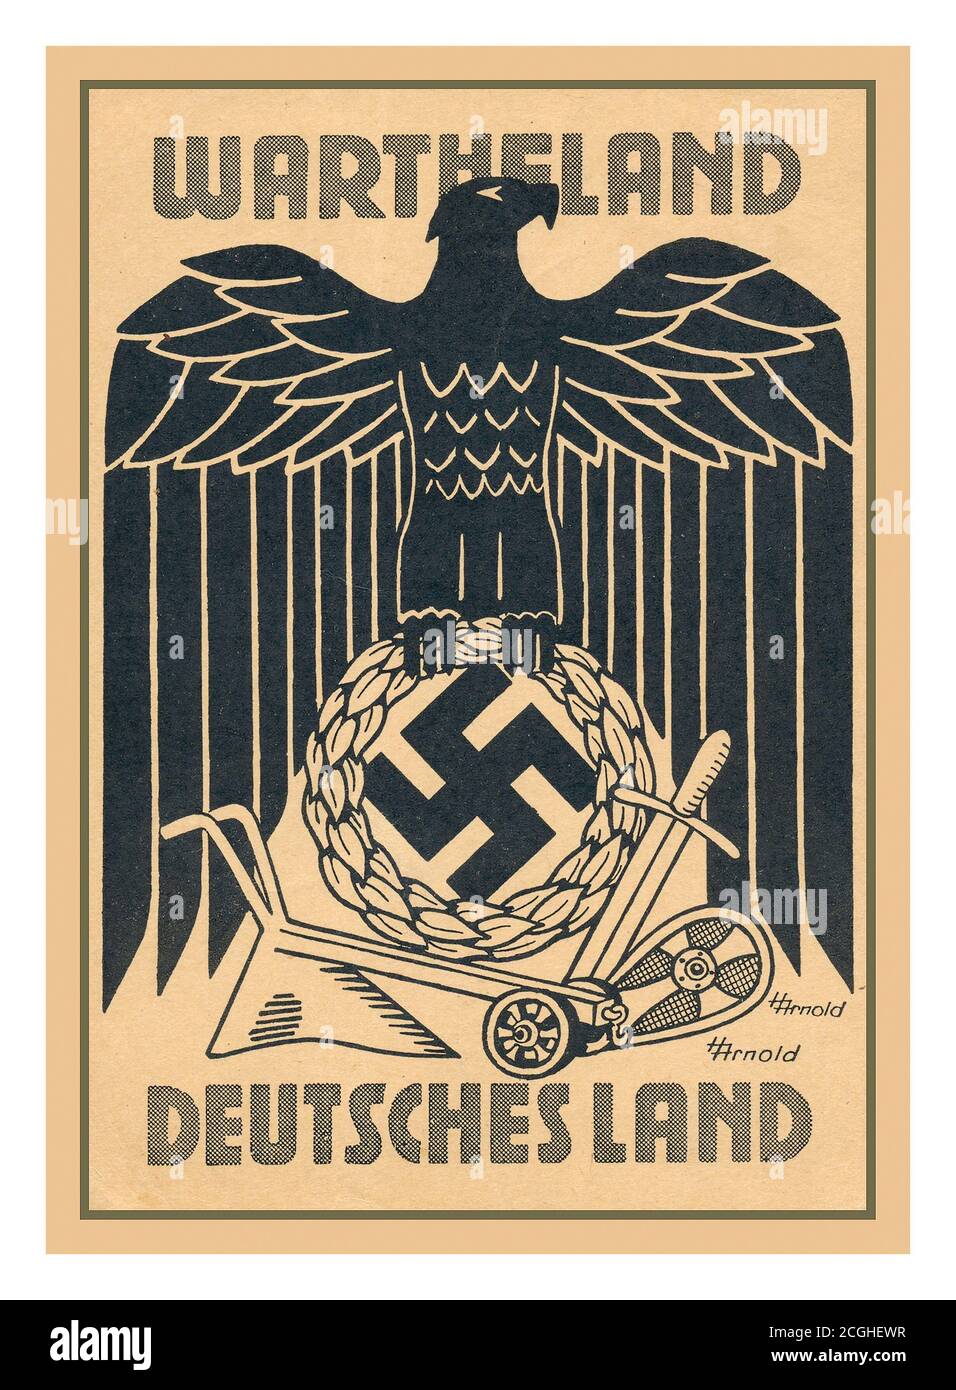 Le Reichsgau Wartheland était un Reichsgau allemand nazi formé de parties du territoire polonais annexé en 1939 pendant la Seconde Guerre mondiale Il comprenait la région de la Grande Pologne et les zones adjacentes. Certaines parties de Warthégau correspondaient à la province de Posen, préprussienne, de même nom Banque D'Images